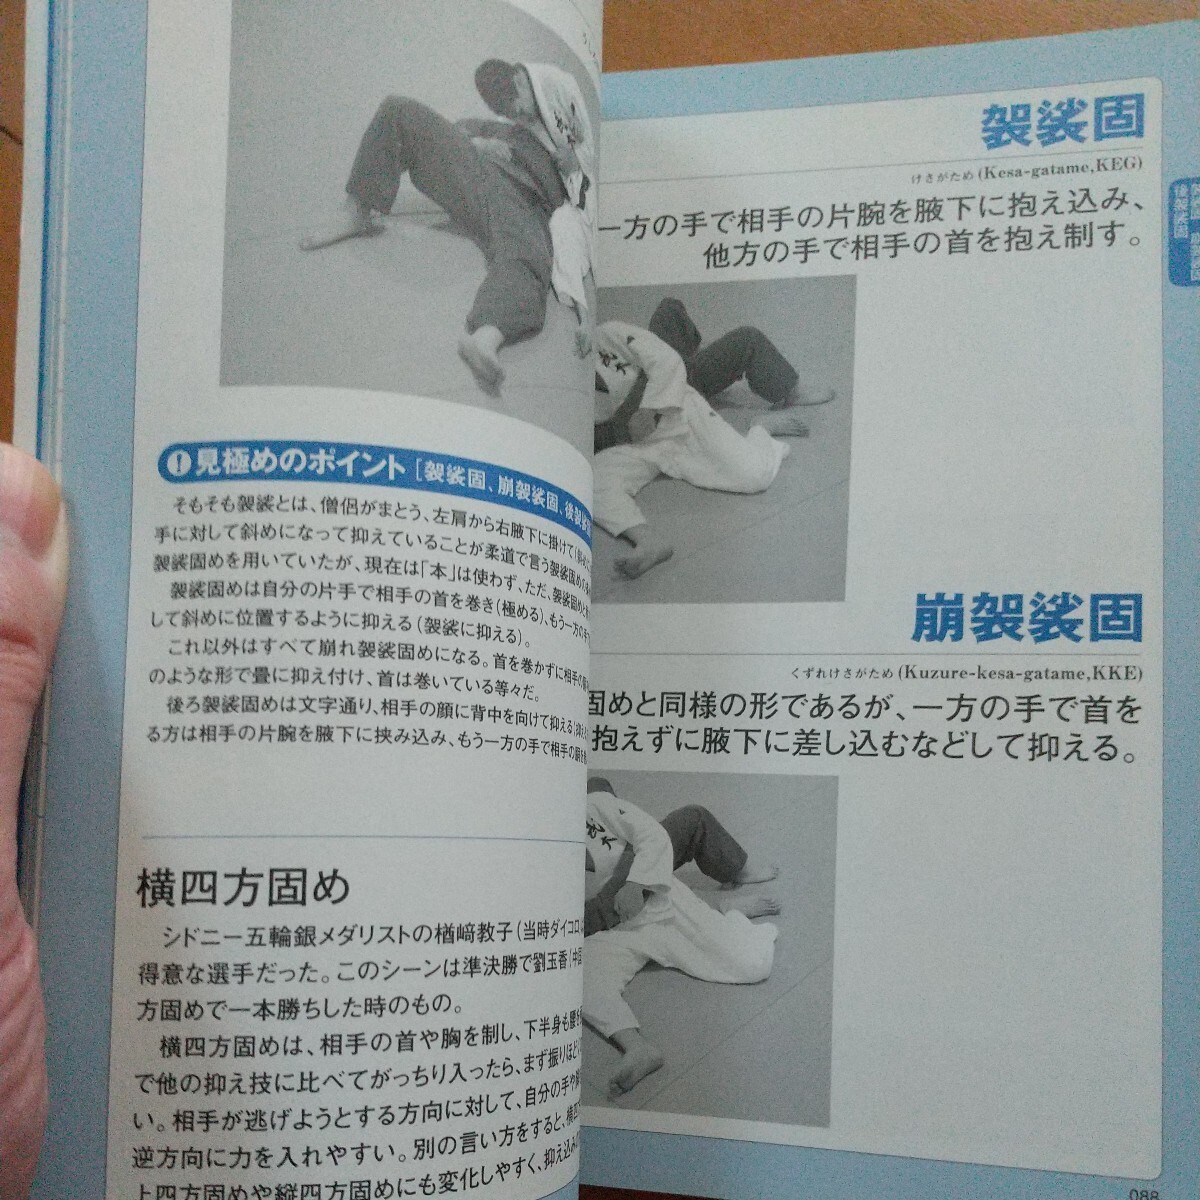 柔道技の見極めハンドブック 柔道 武道 古武道 武術 柔術 総合 格闘技 ブラジリアン柔術 の画像7